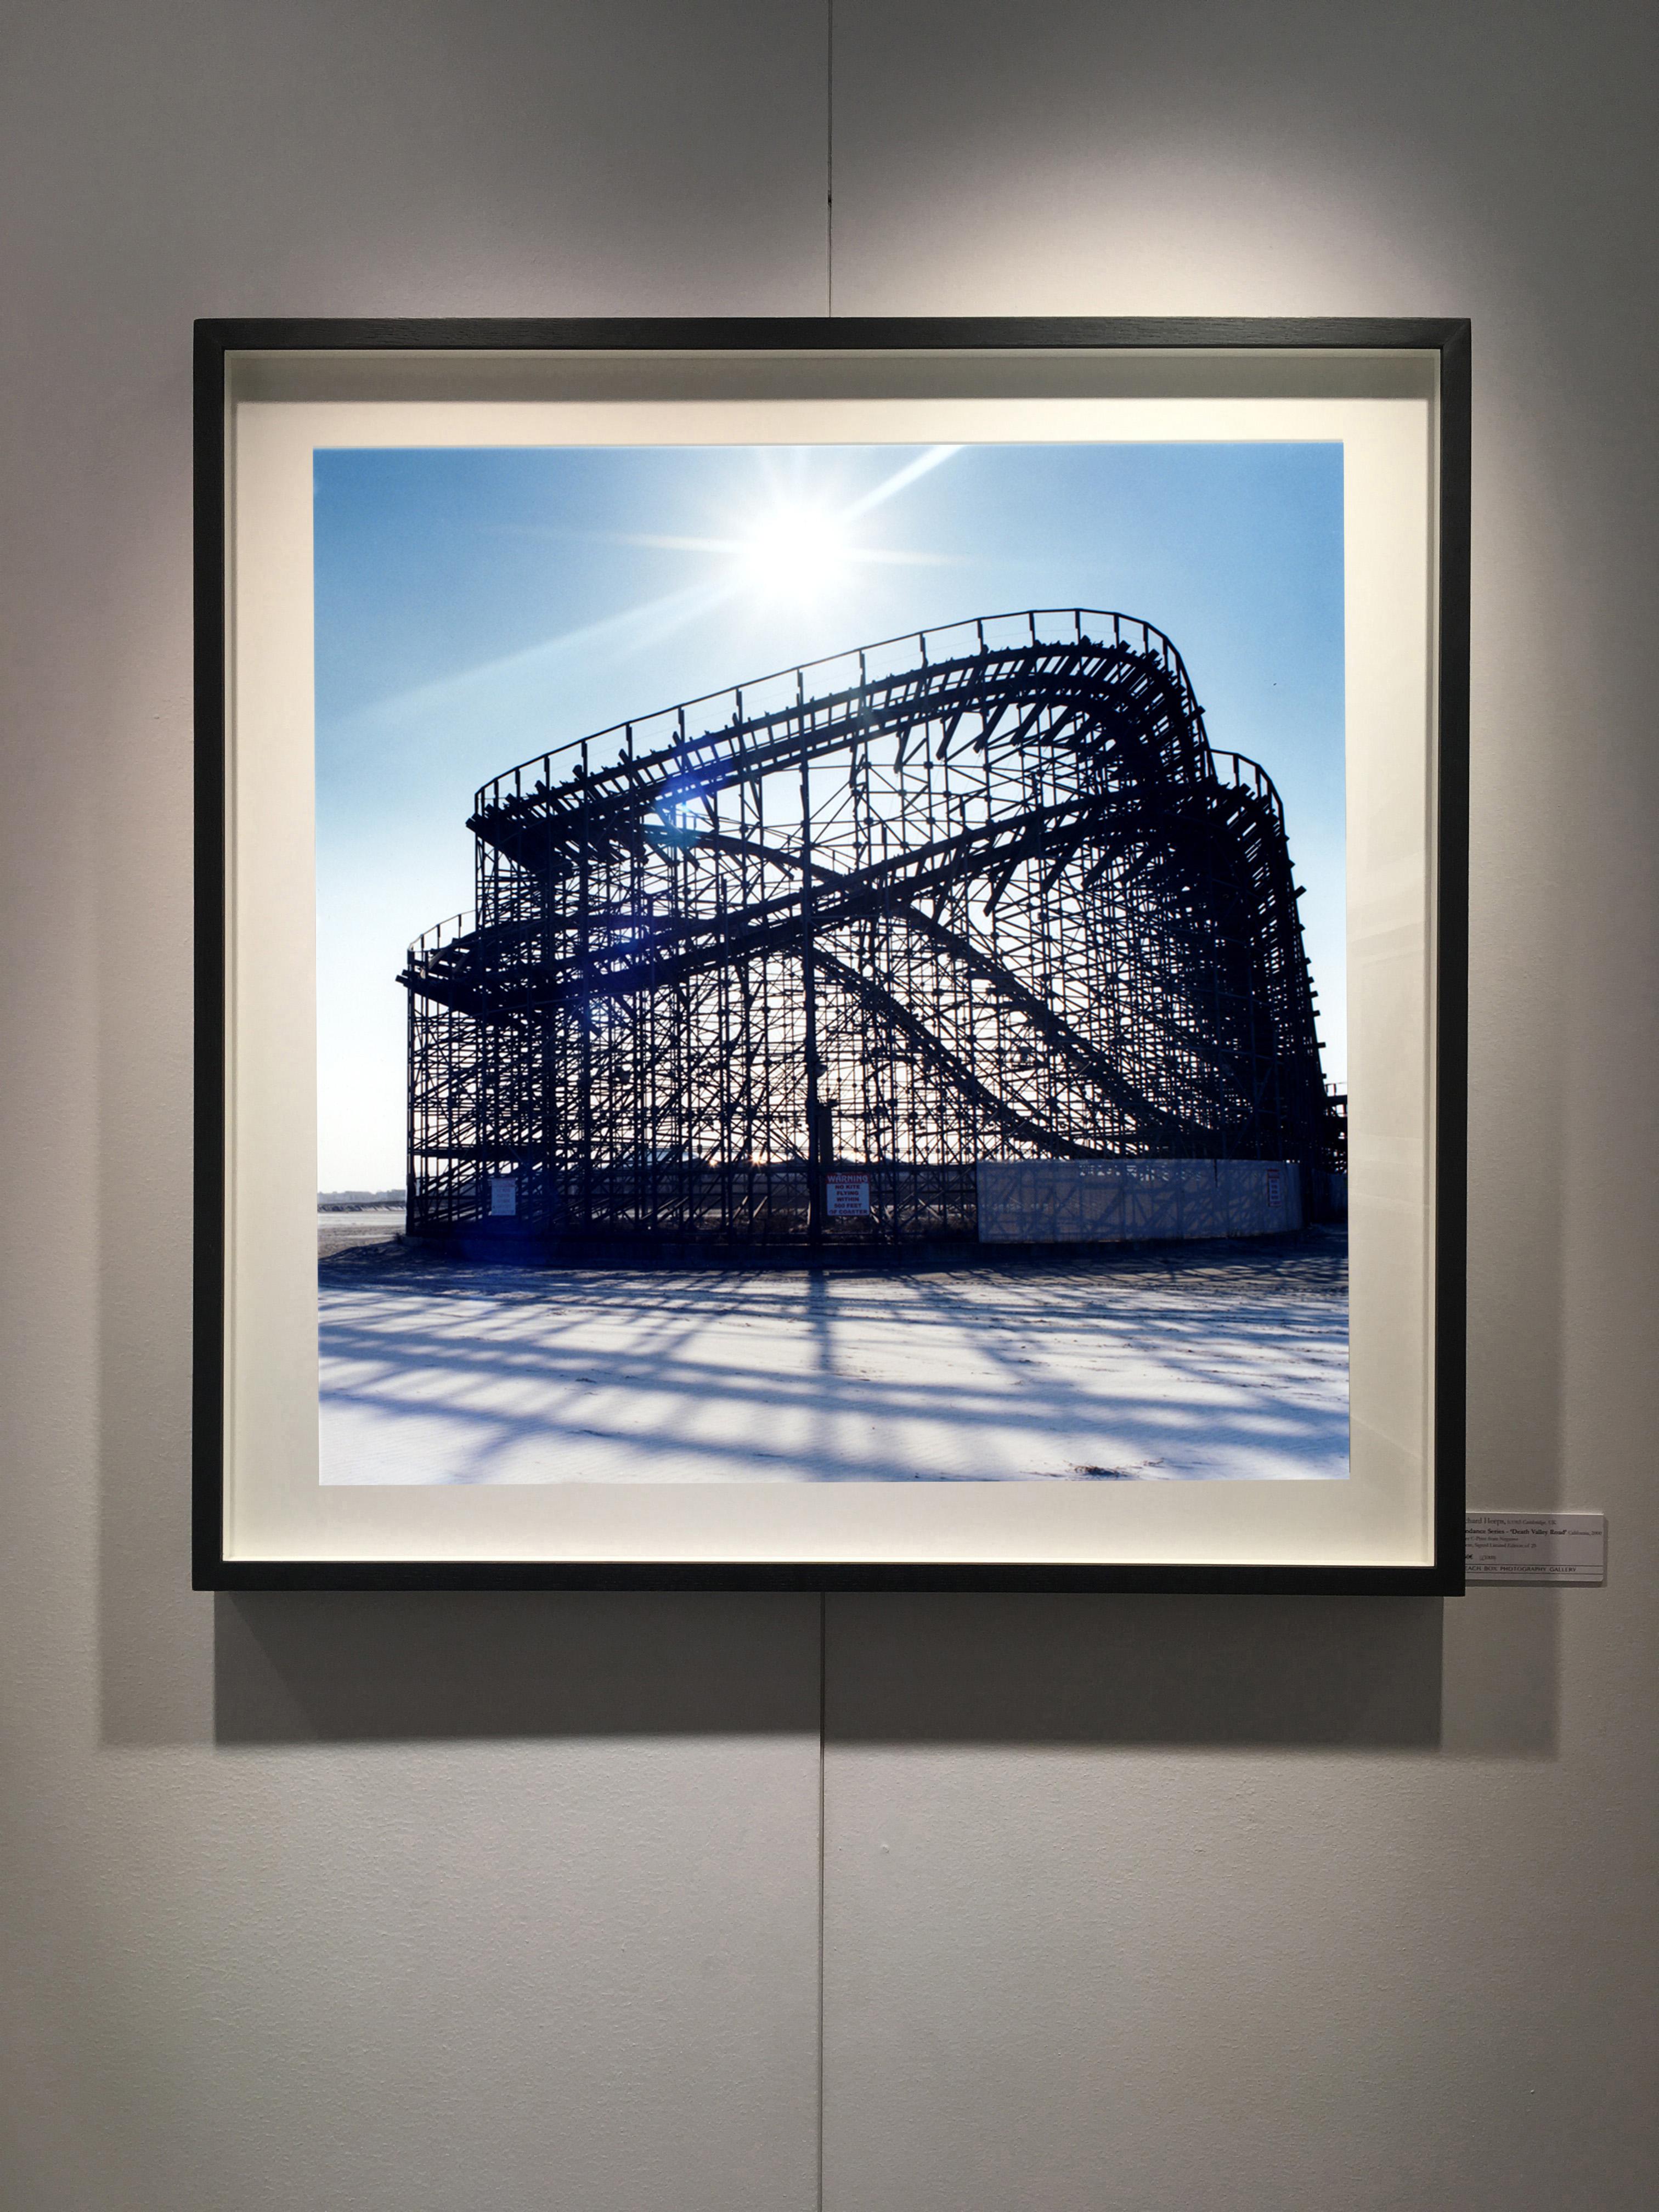 Rollercoaster in Weiß, Wildholz, New Jersey - Blau, Farbfotografie  – Photograph von Richard Heeps